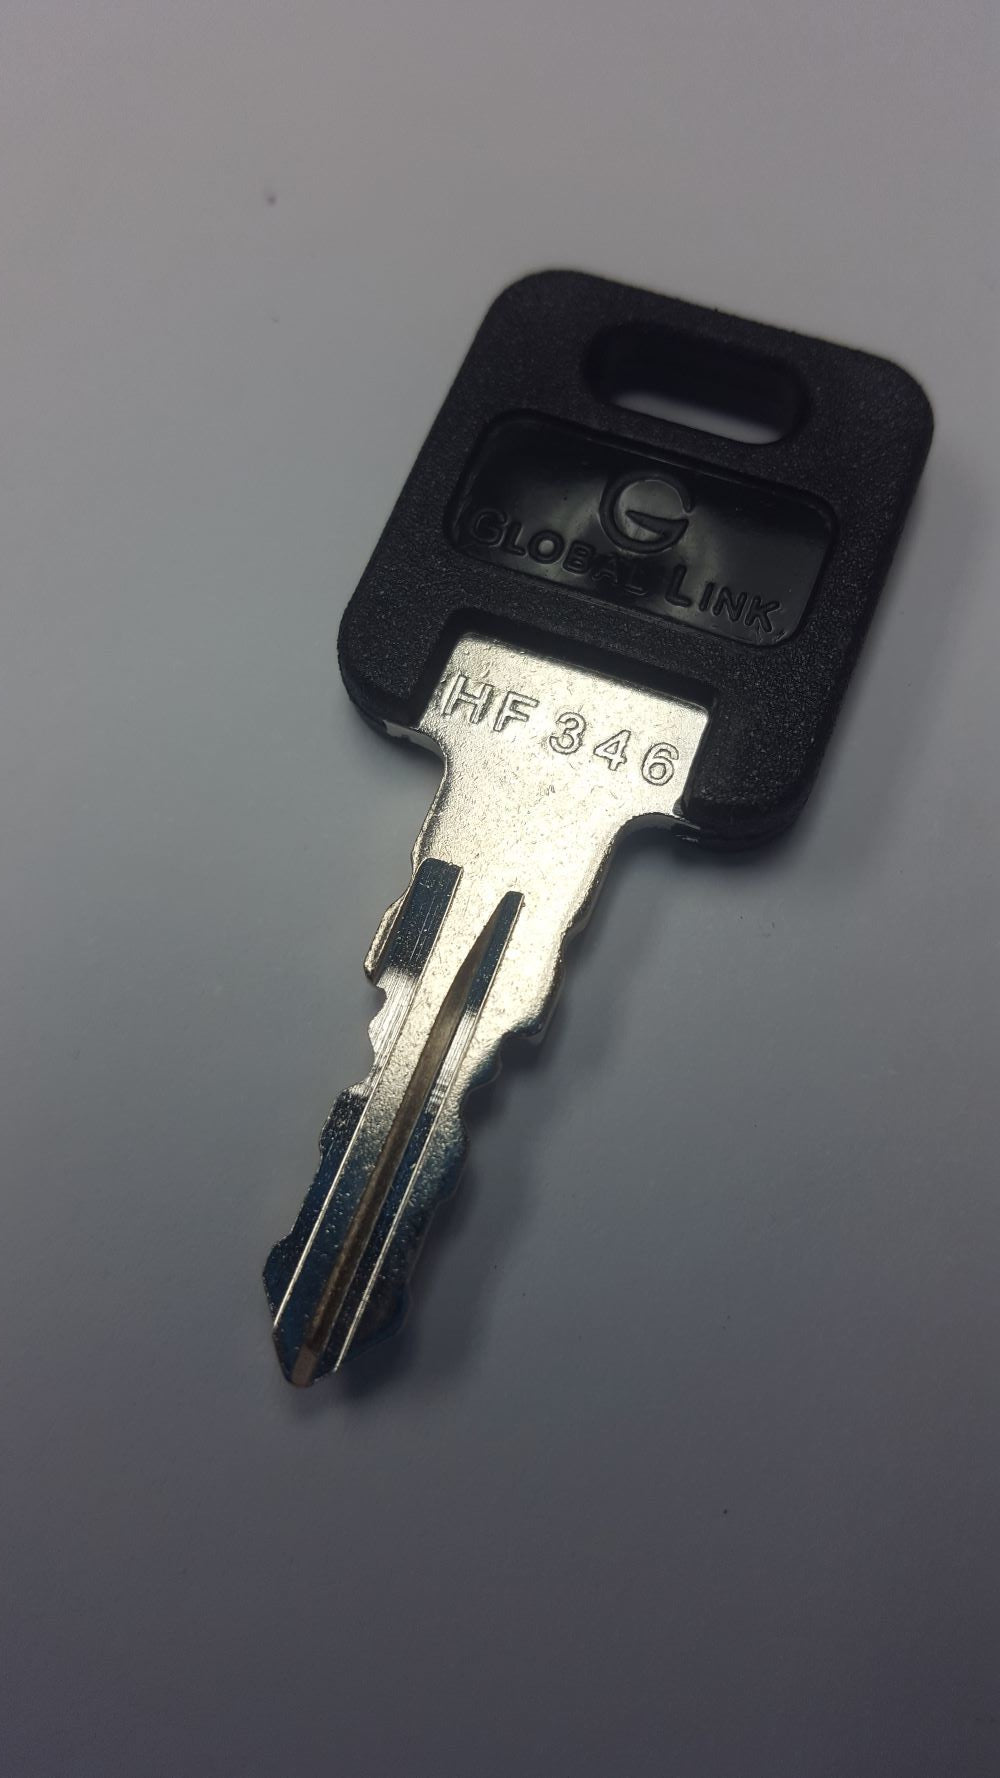 CPG KEY-HF-346 Pre-cut Stamped FIC Replacemnt HF346 Key